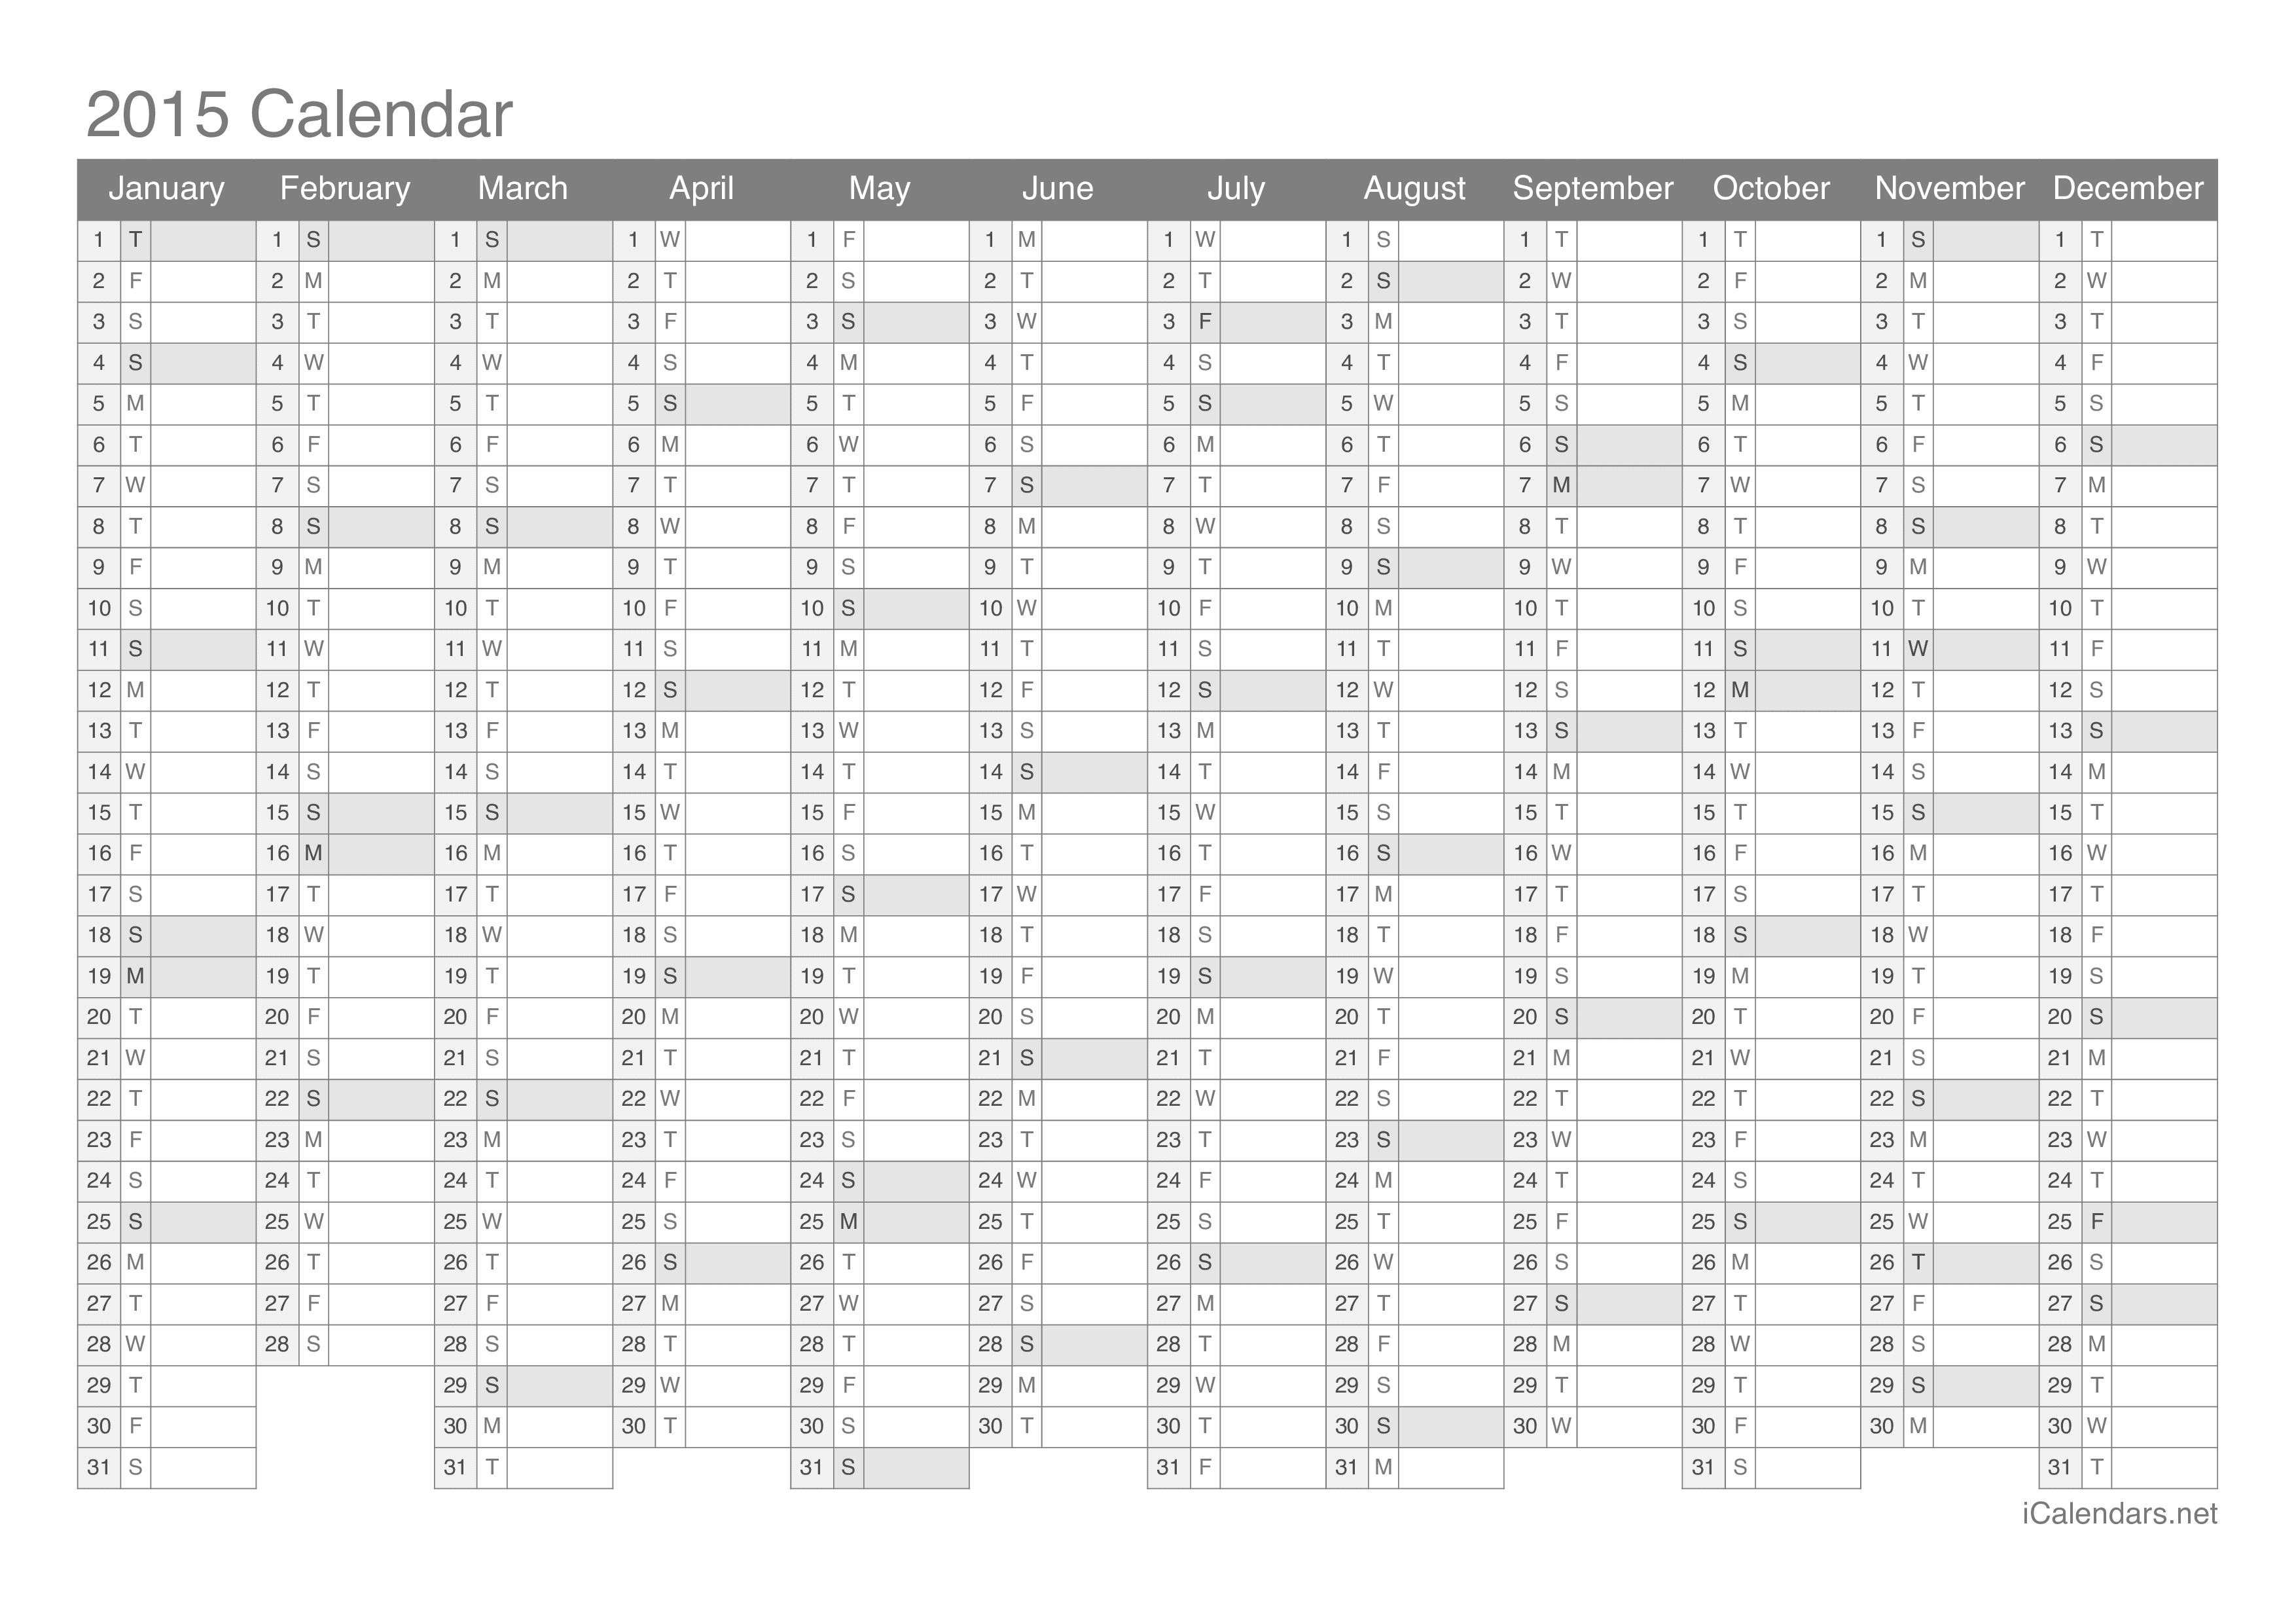 Credential håndflade Brobrygge 2015 Printable Calendar - PDF or Excel - icalendars.net